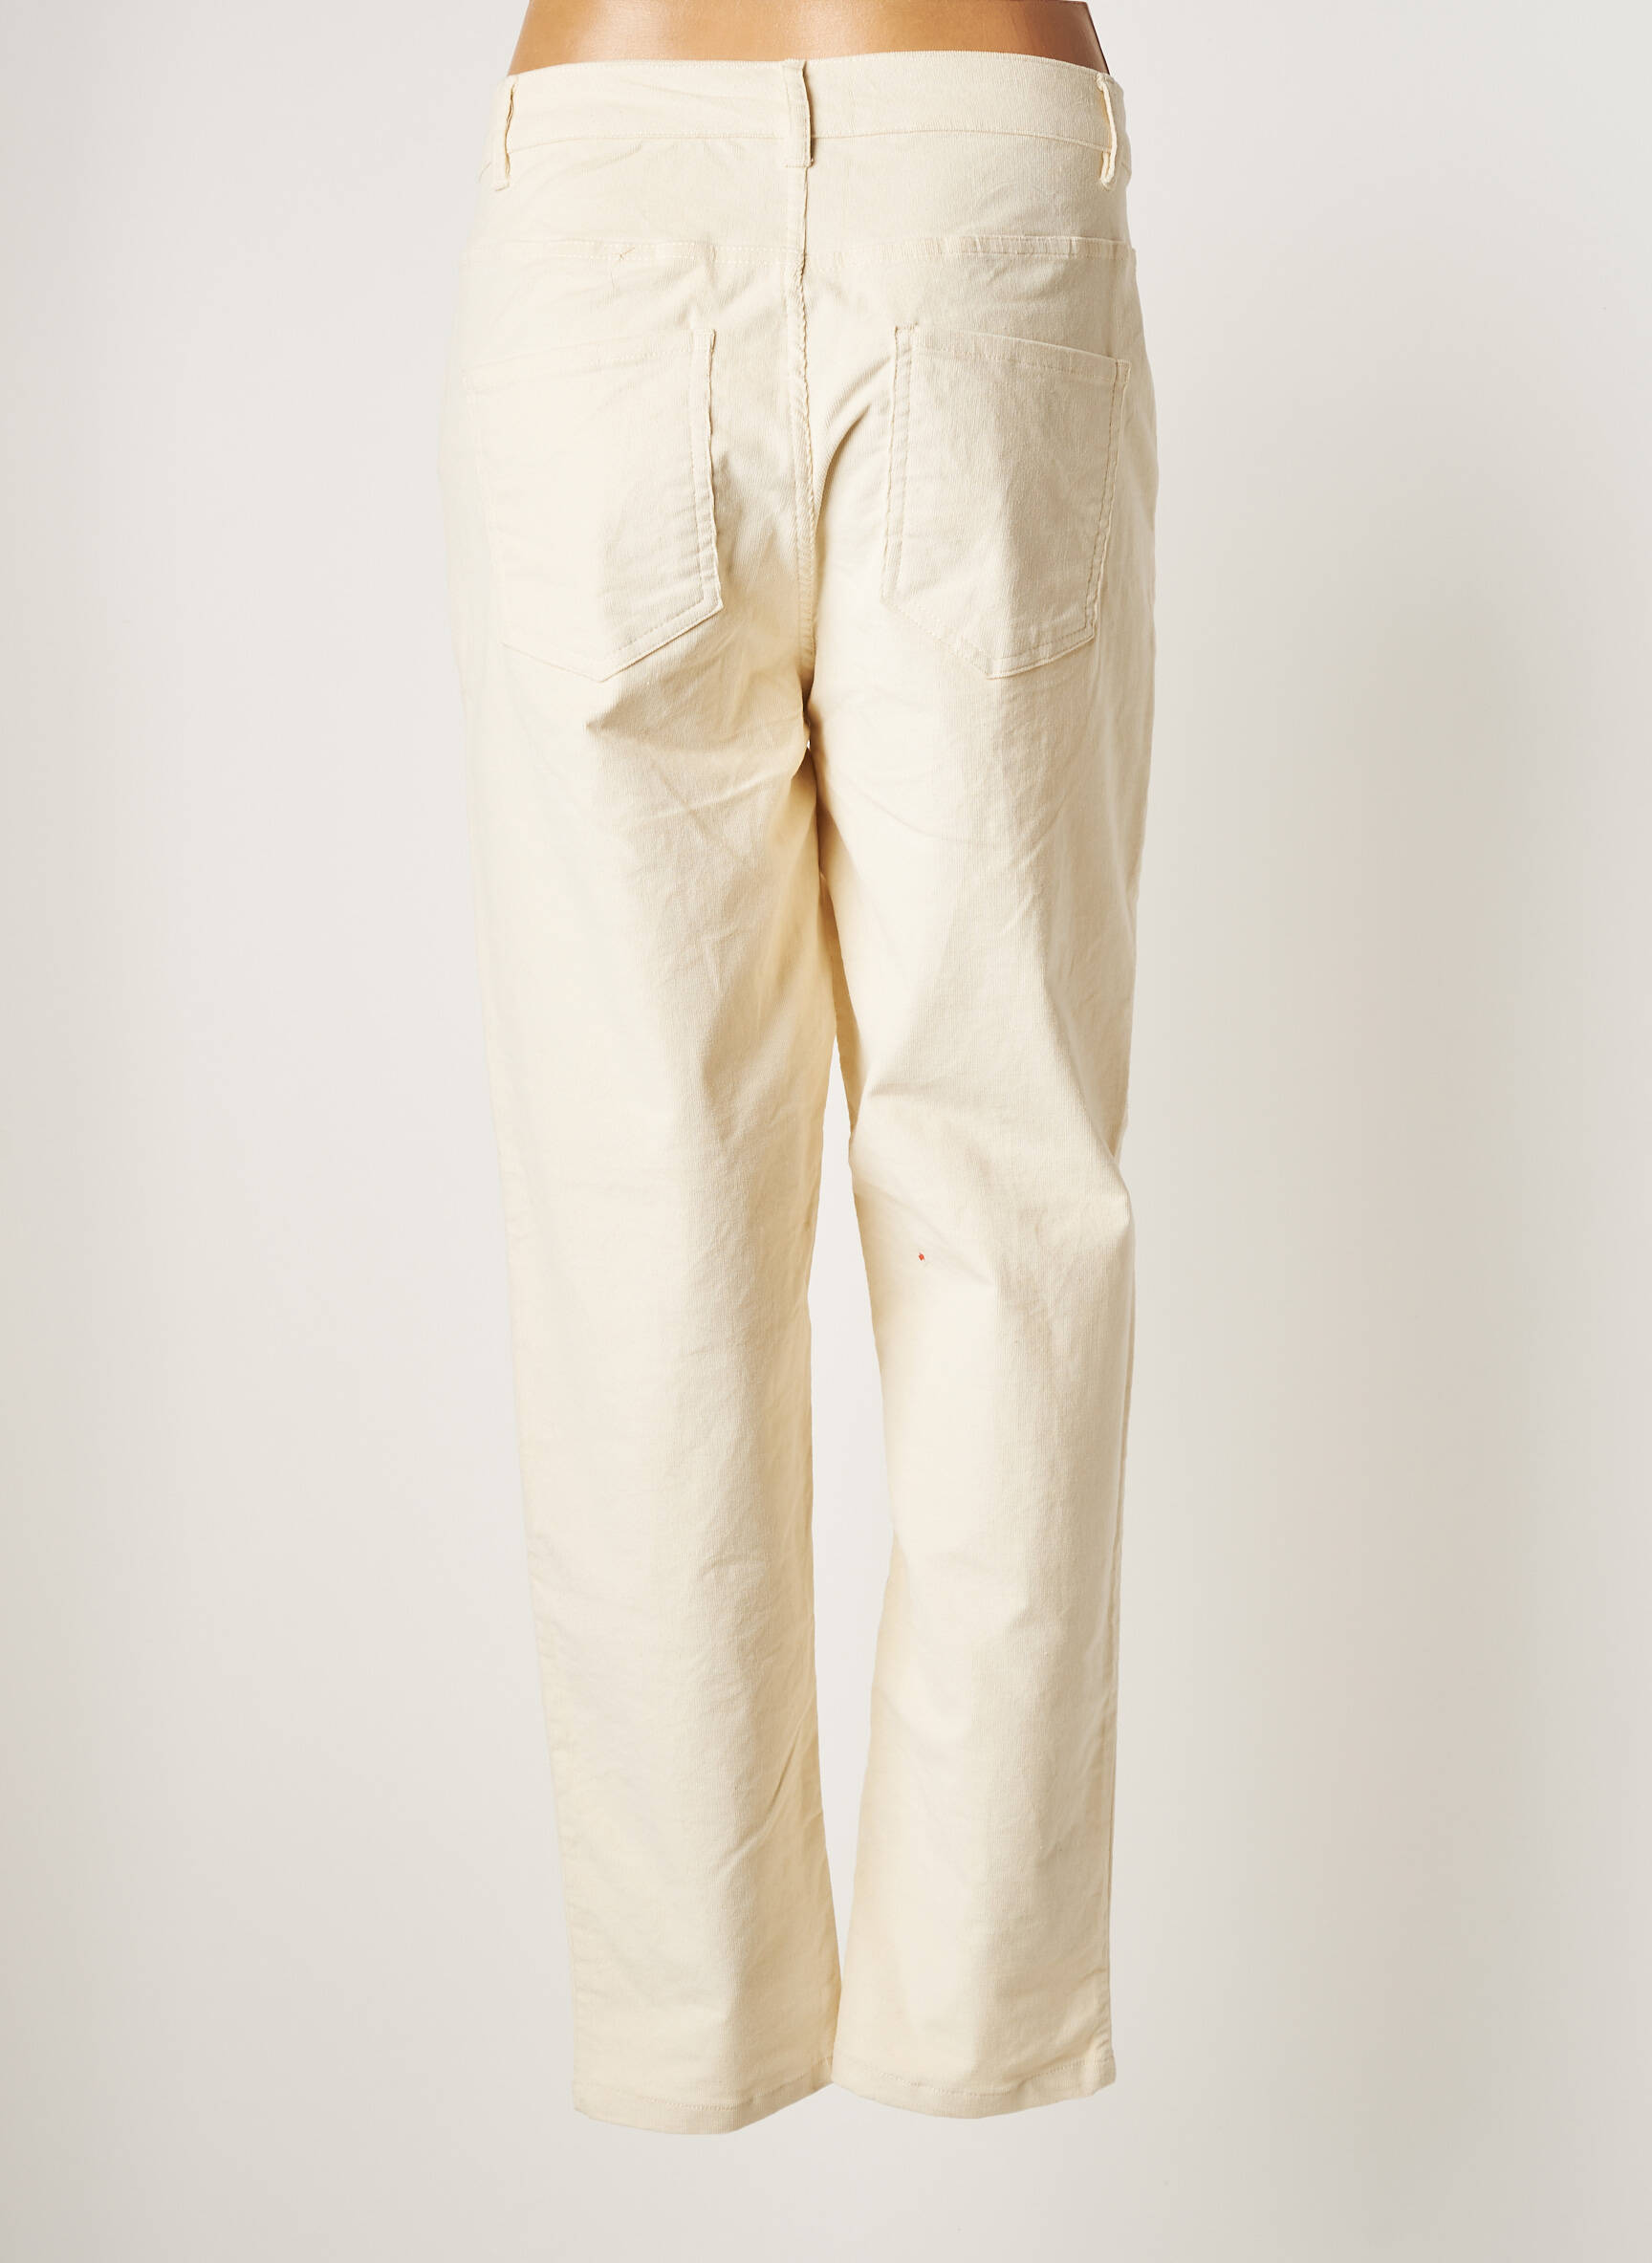 Bfd Creation Pantalons Larges Fille De Couleur Beige 1814288-beige0 - Modz